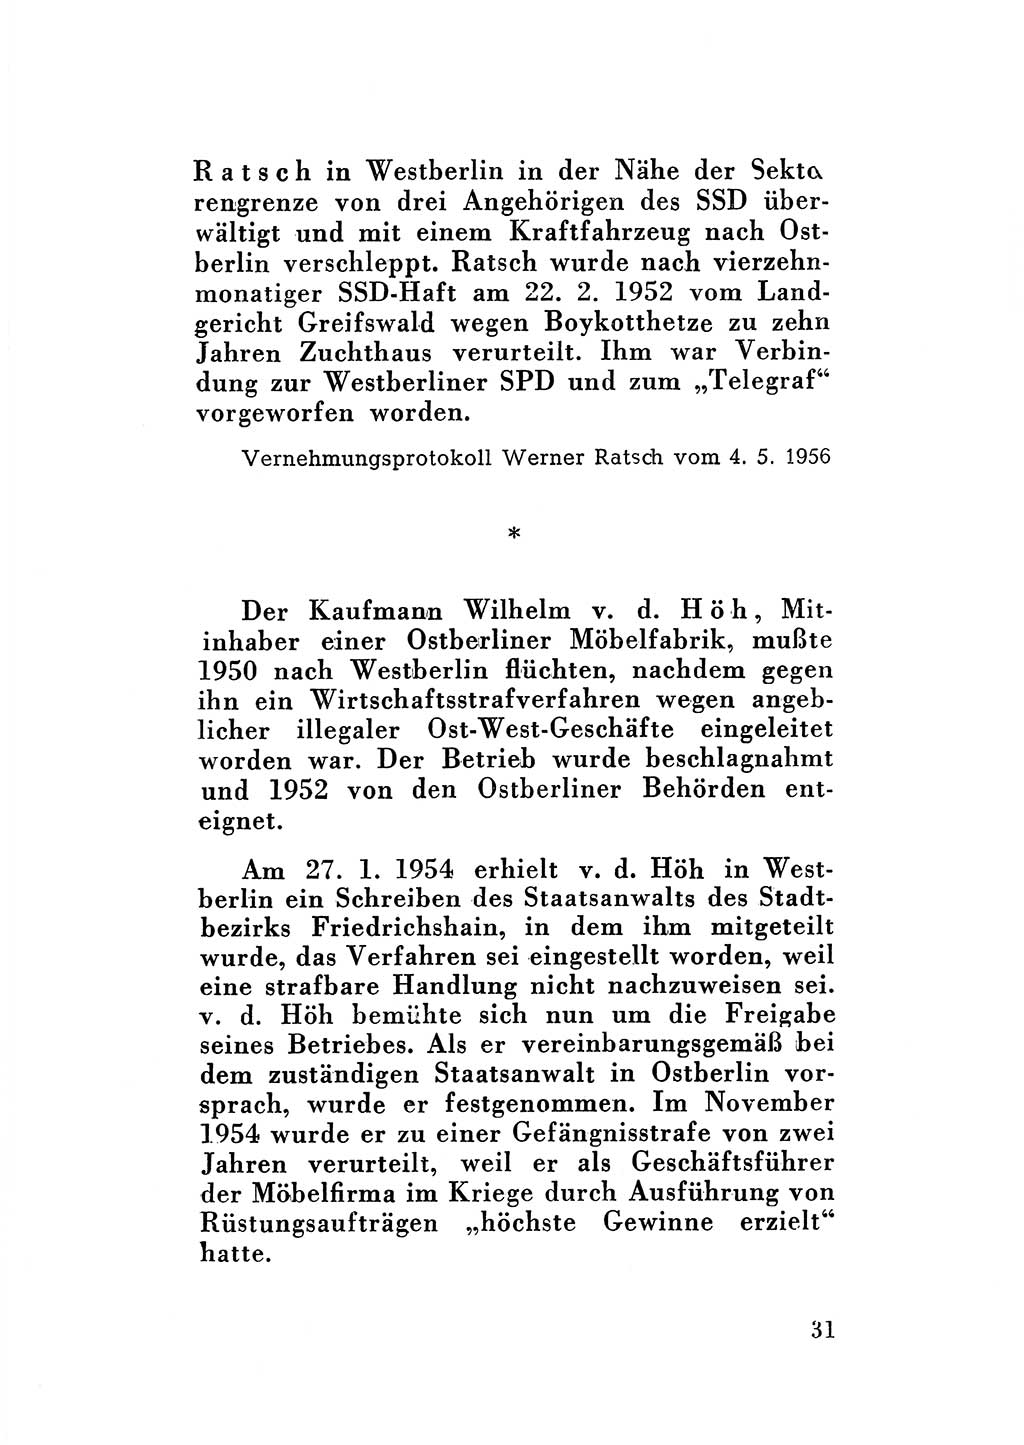 Katalog des Unrechts, Untersuchungsausschuß Freiheitlicher Juristen (UfJ) [Bundesrepublik Deutschland (BRD)] 1956, Seite 31 (Kat. UnR. UfJ BRD 1956, S. 31)